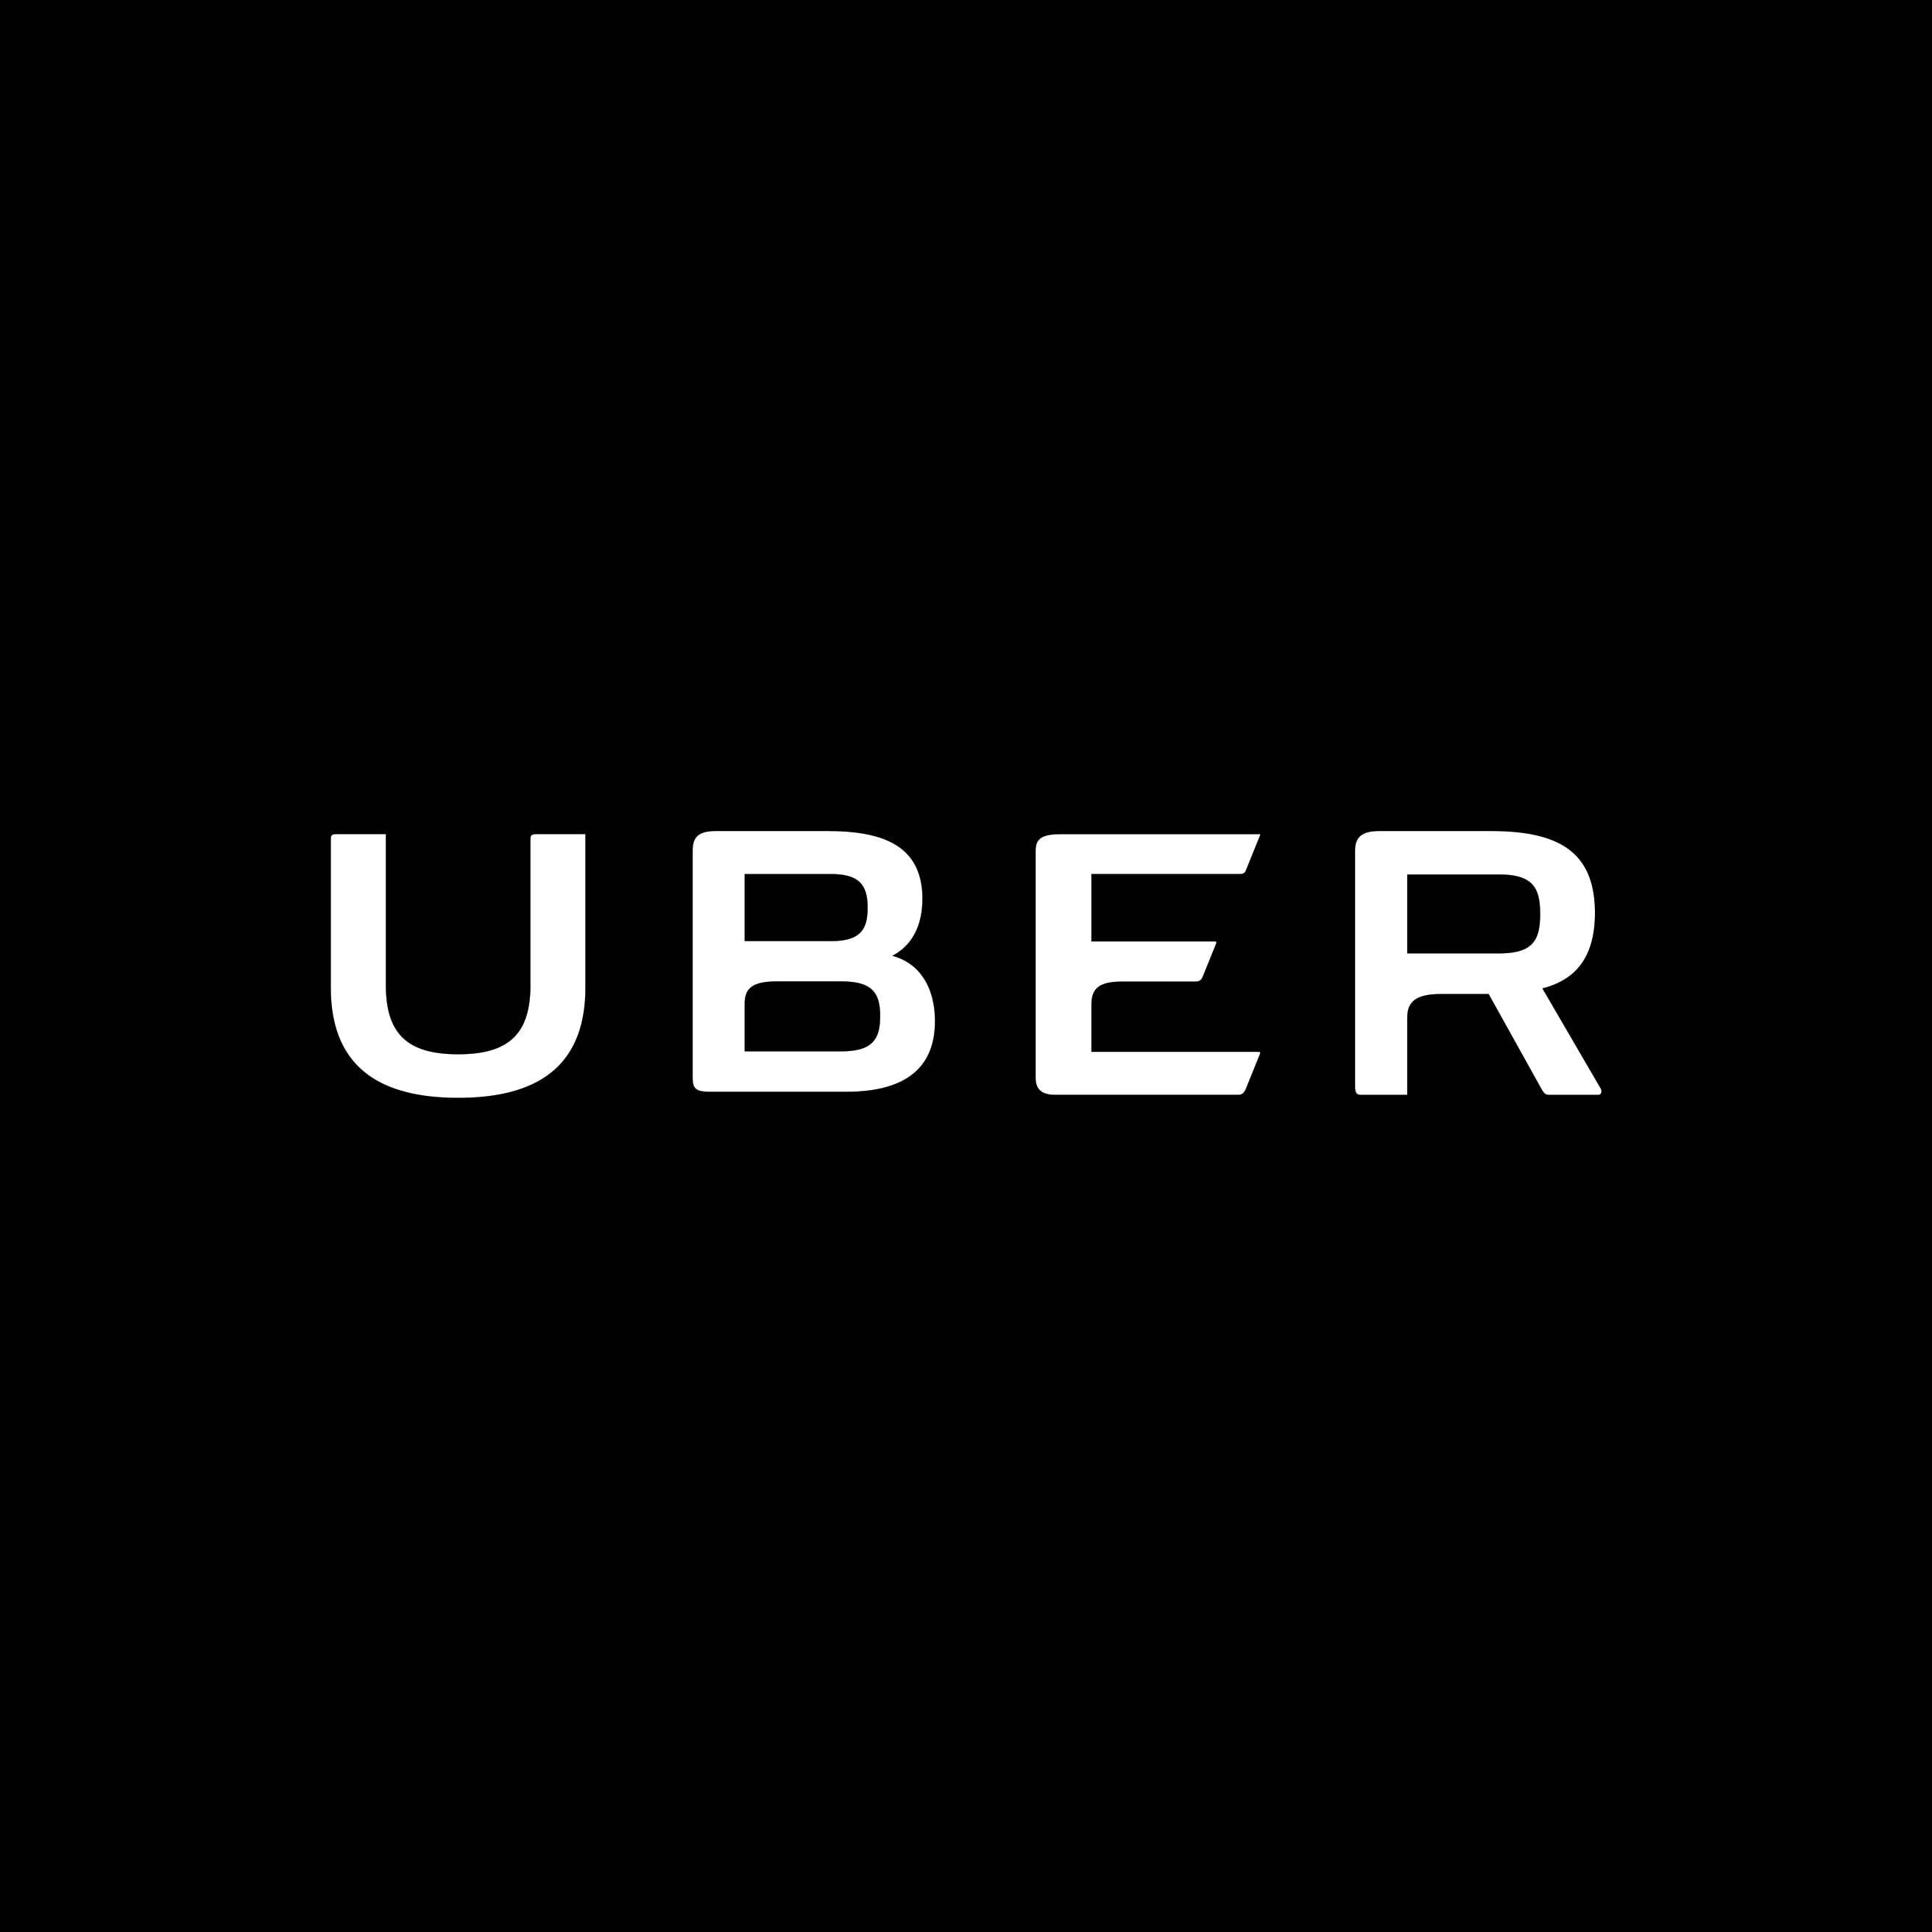 Uber Company Logo - Uber rides into Mexico debit card arena – FinTech Futures